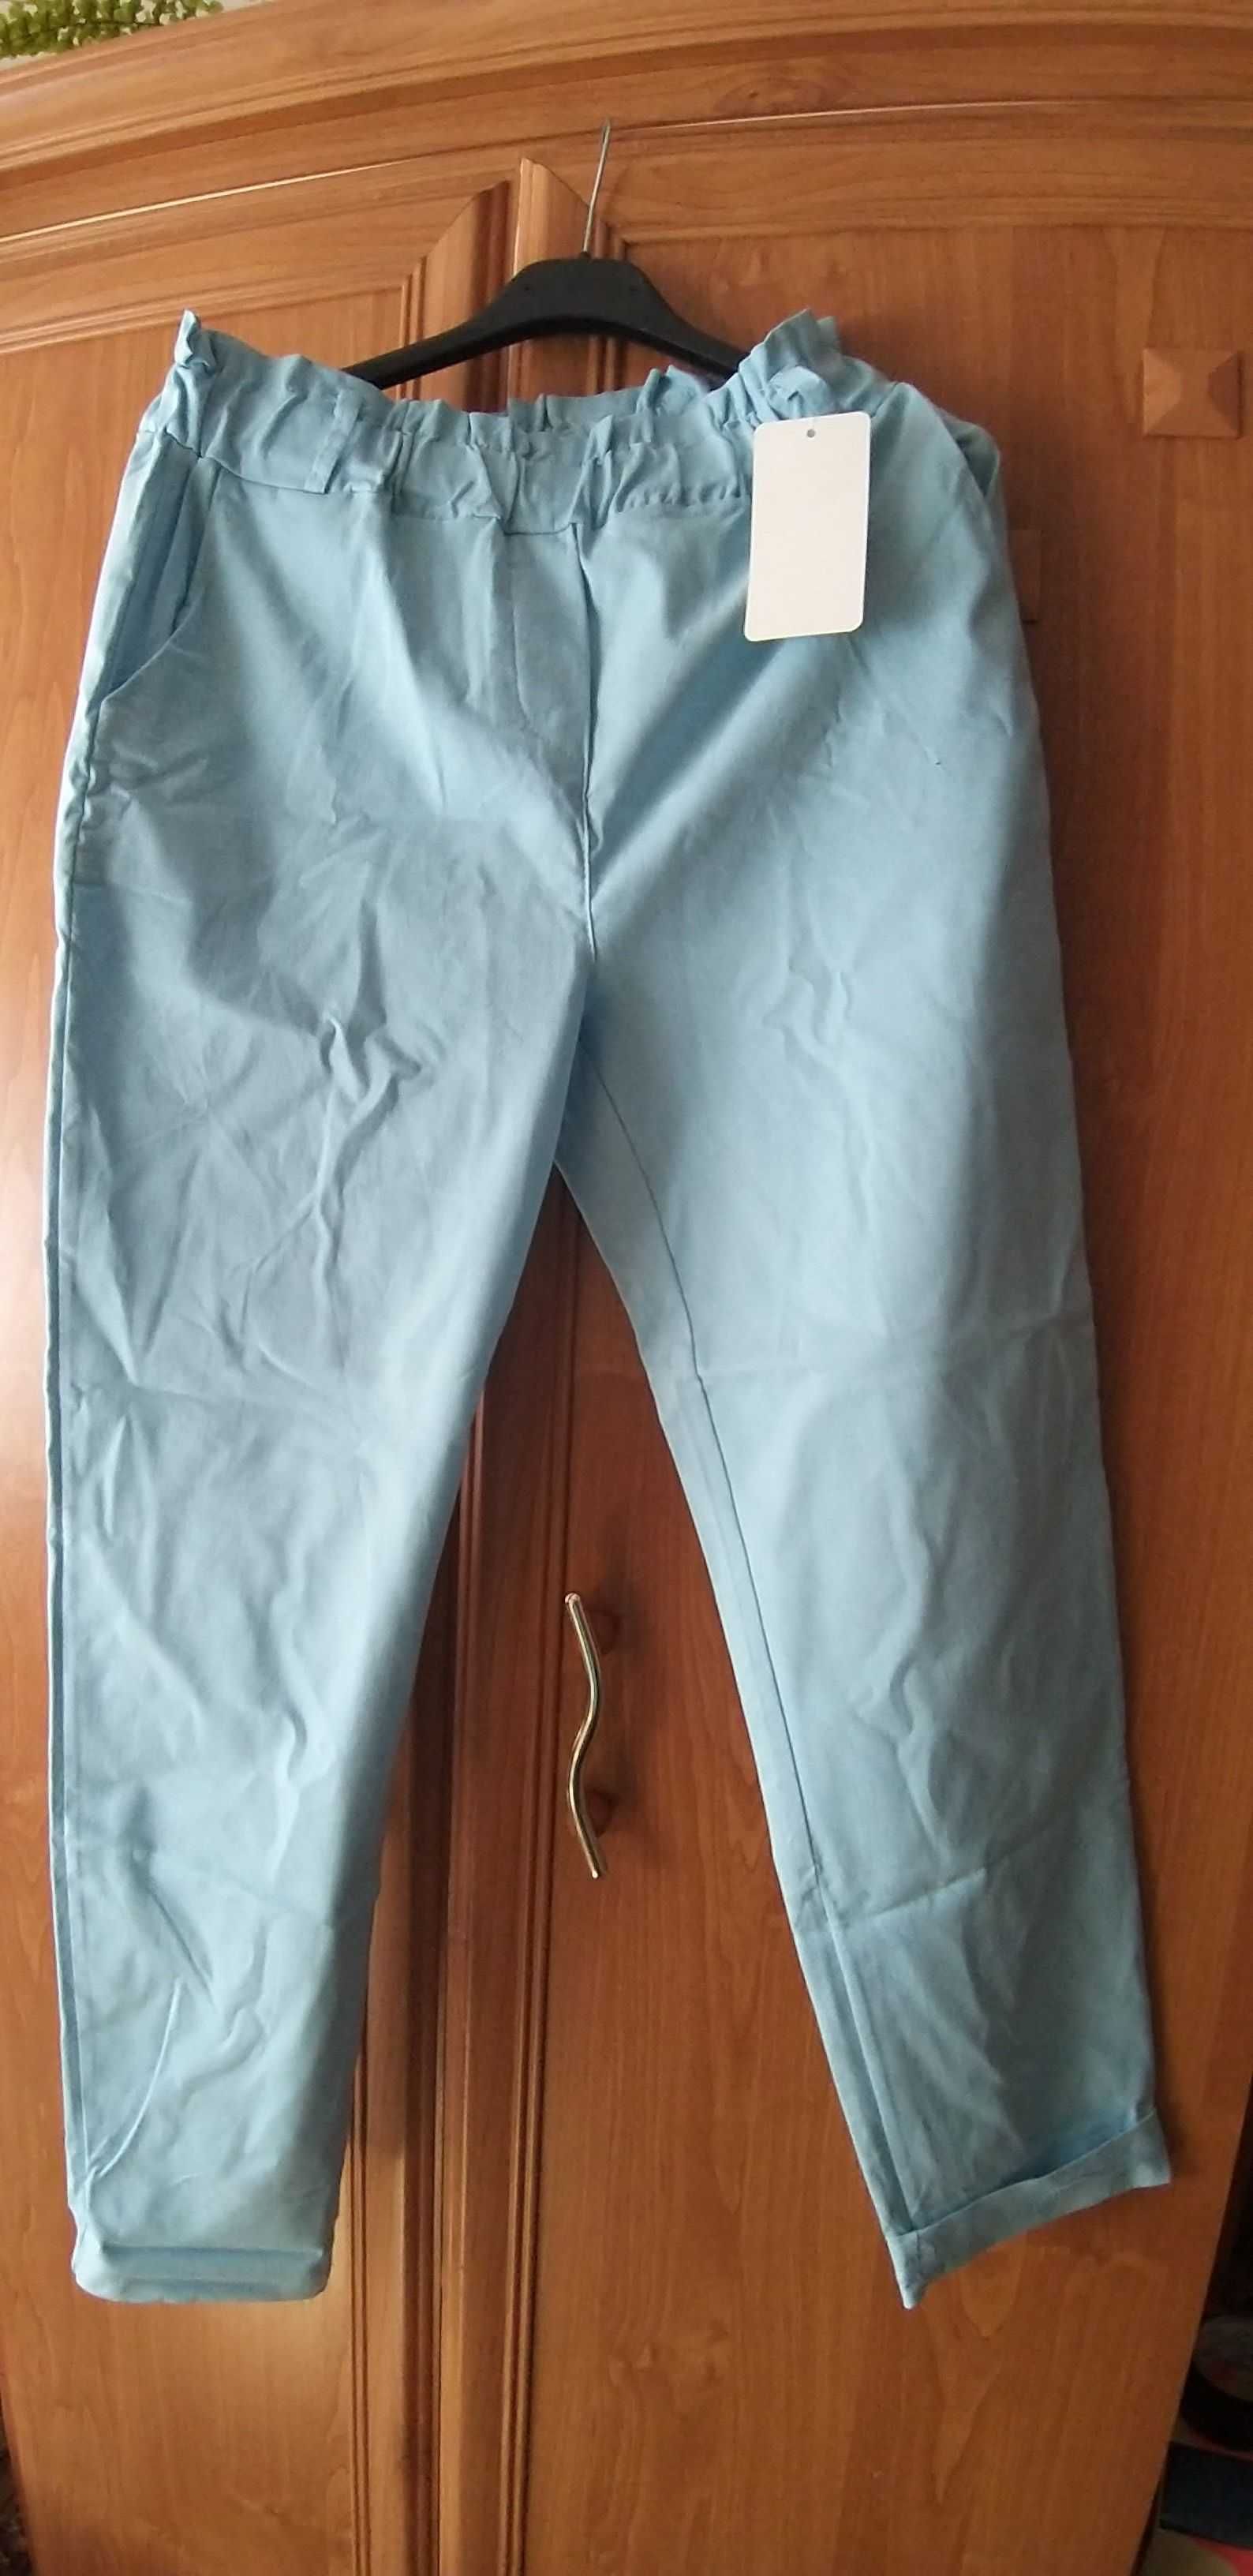 Spodnie długa nogawka jasnoniebieskie roz. XL